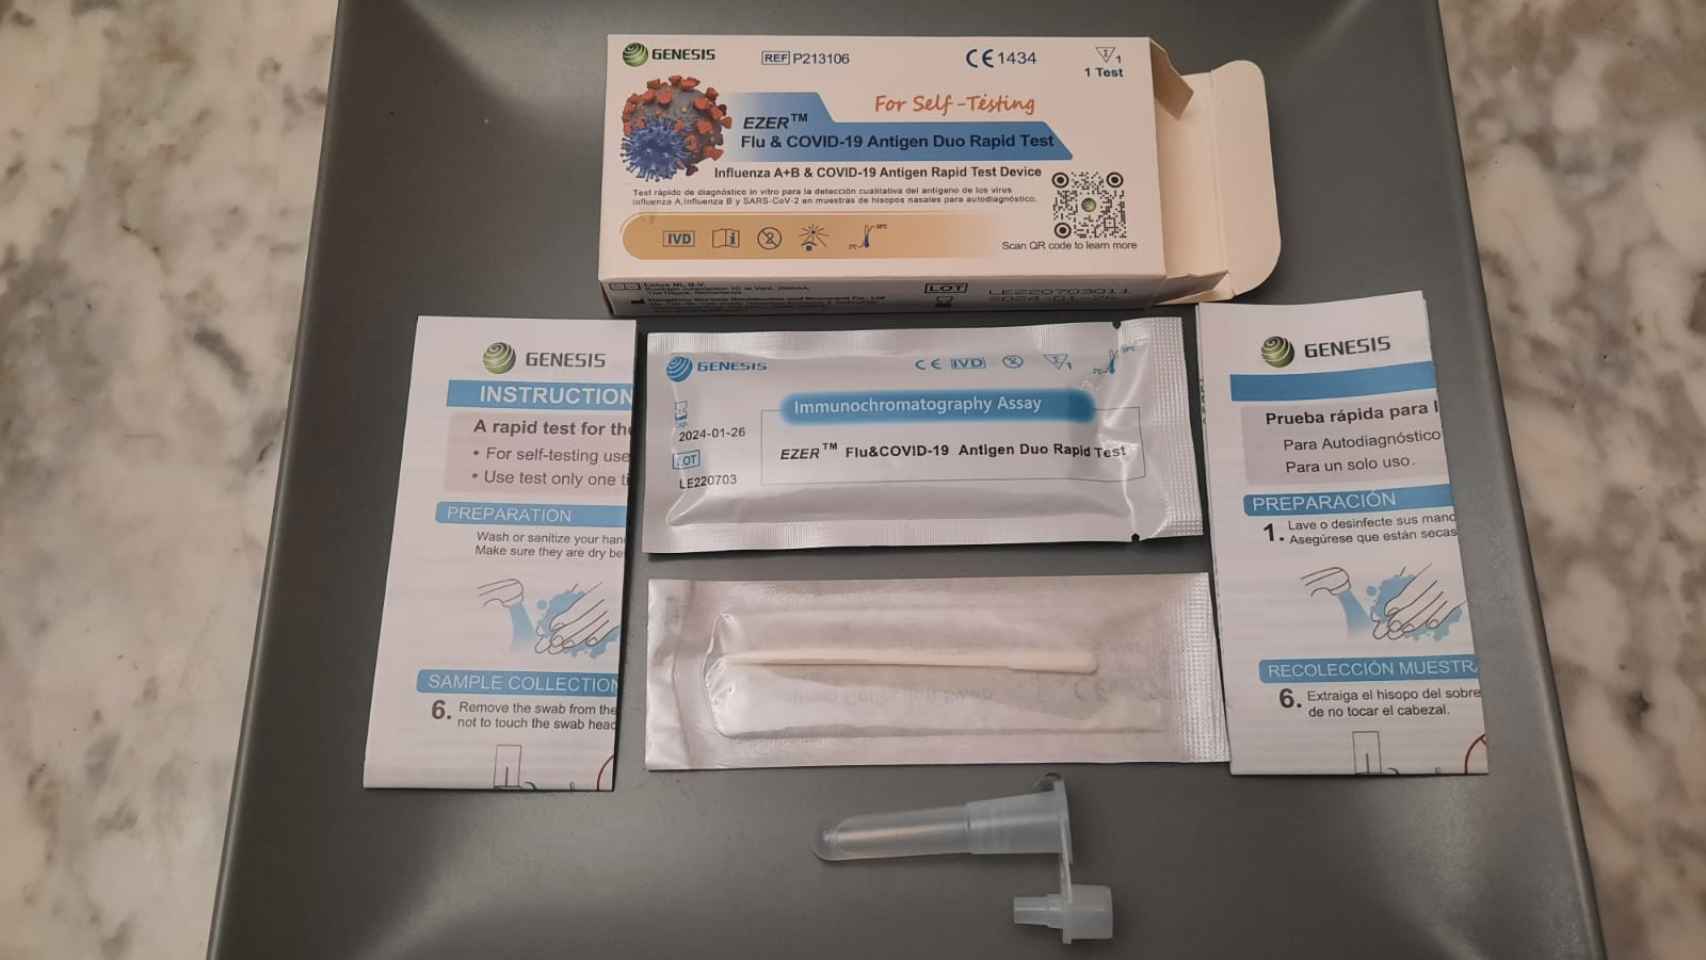 Los elementos que contiene la caja del test de detección de Covid-19 y gripe.